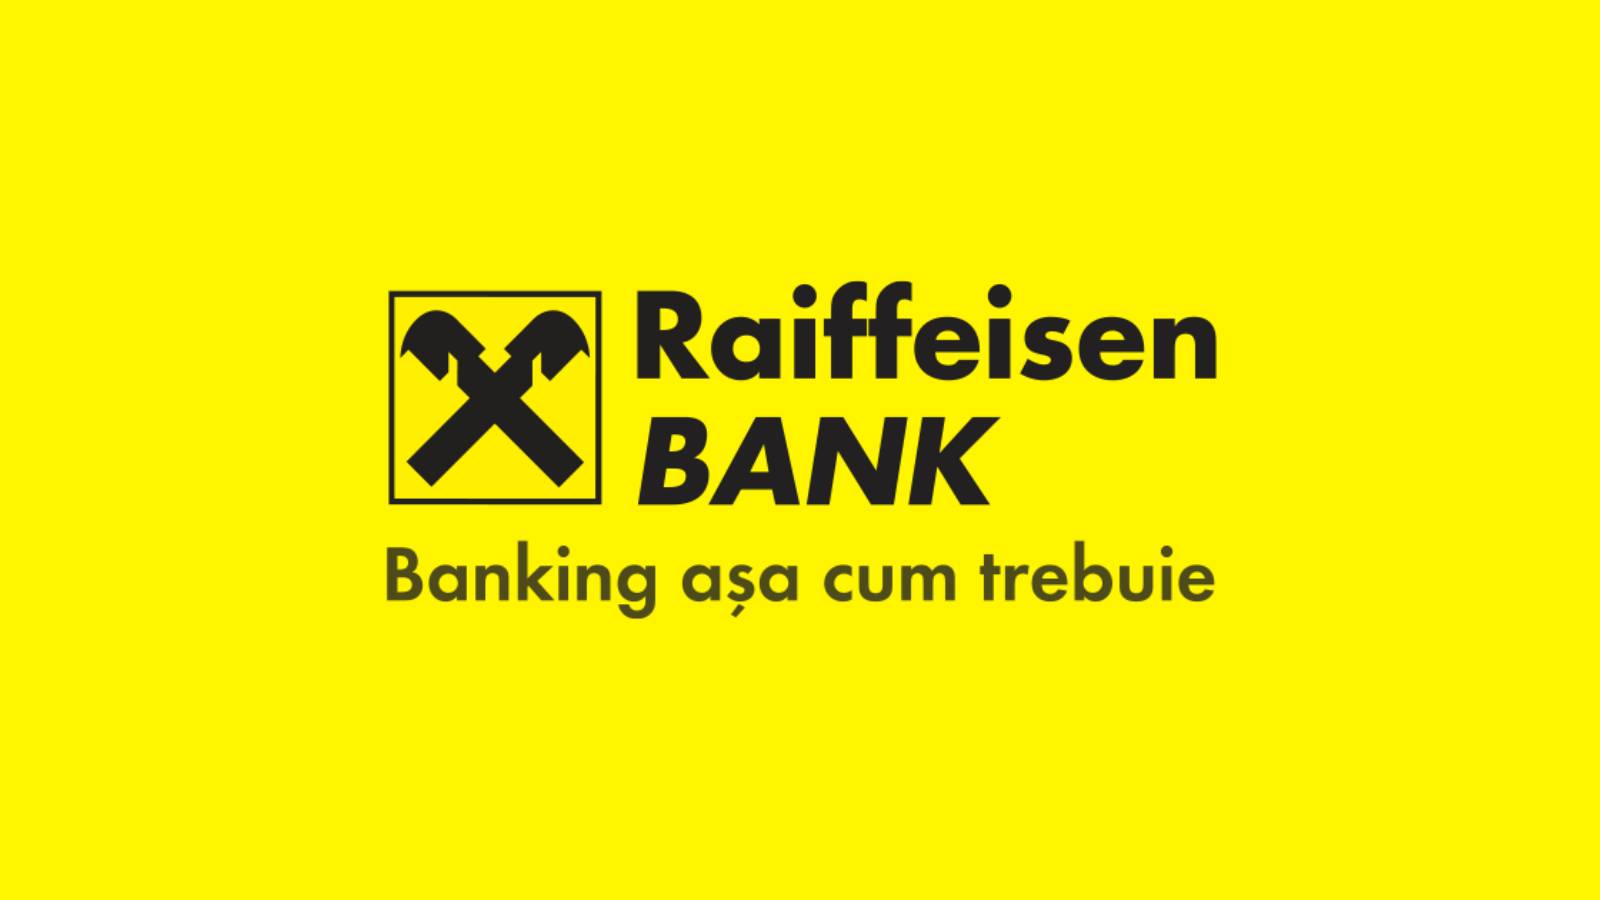 Trabajo en el banco Raiffeisen